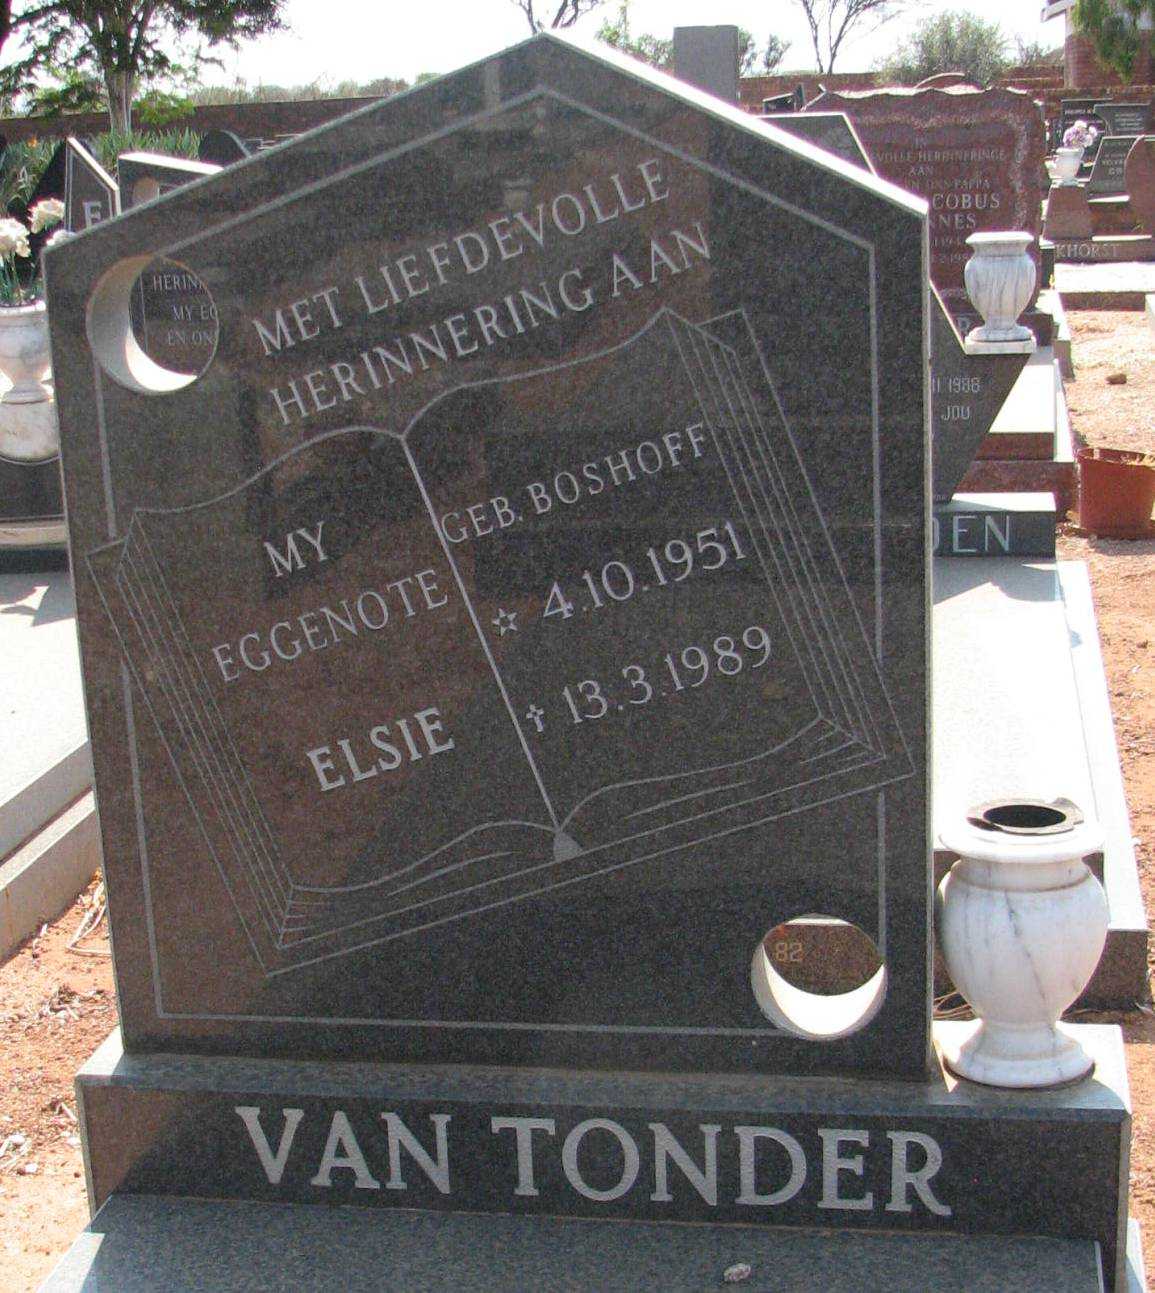 TONDER Elsie, van nee BOSHOFF 1951-1989